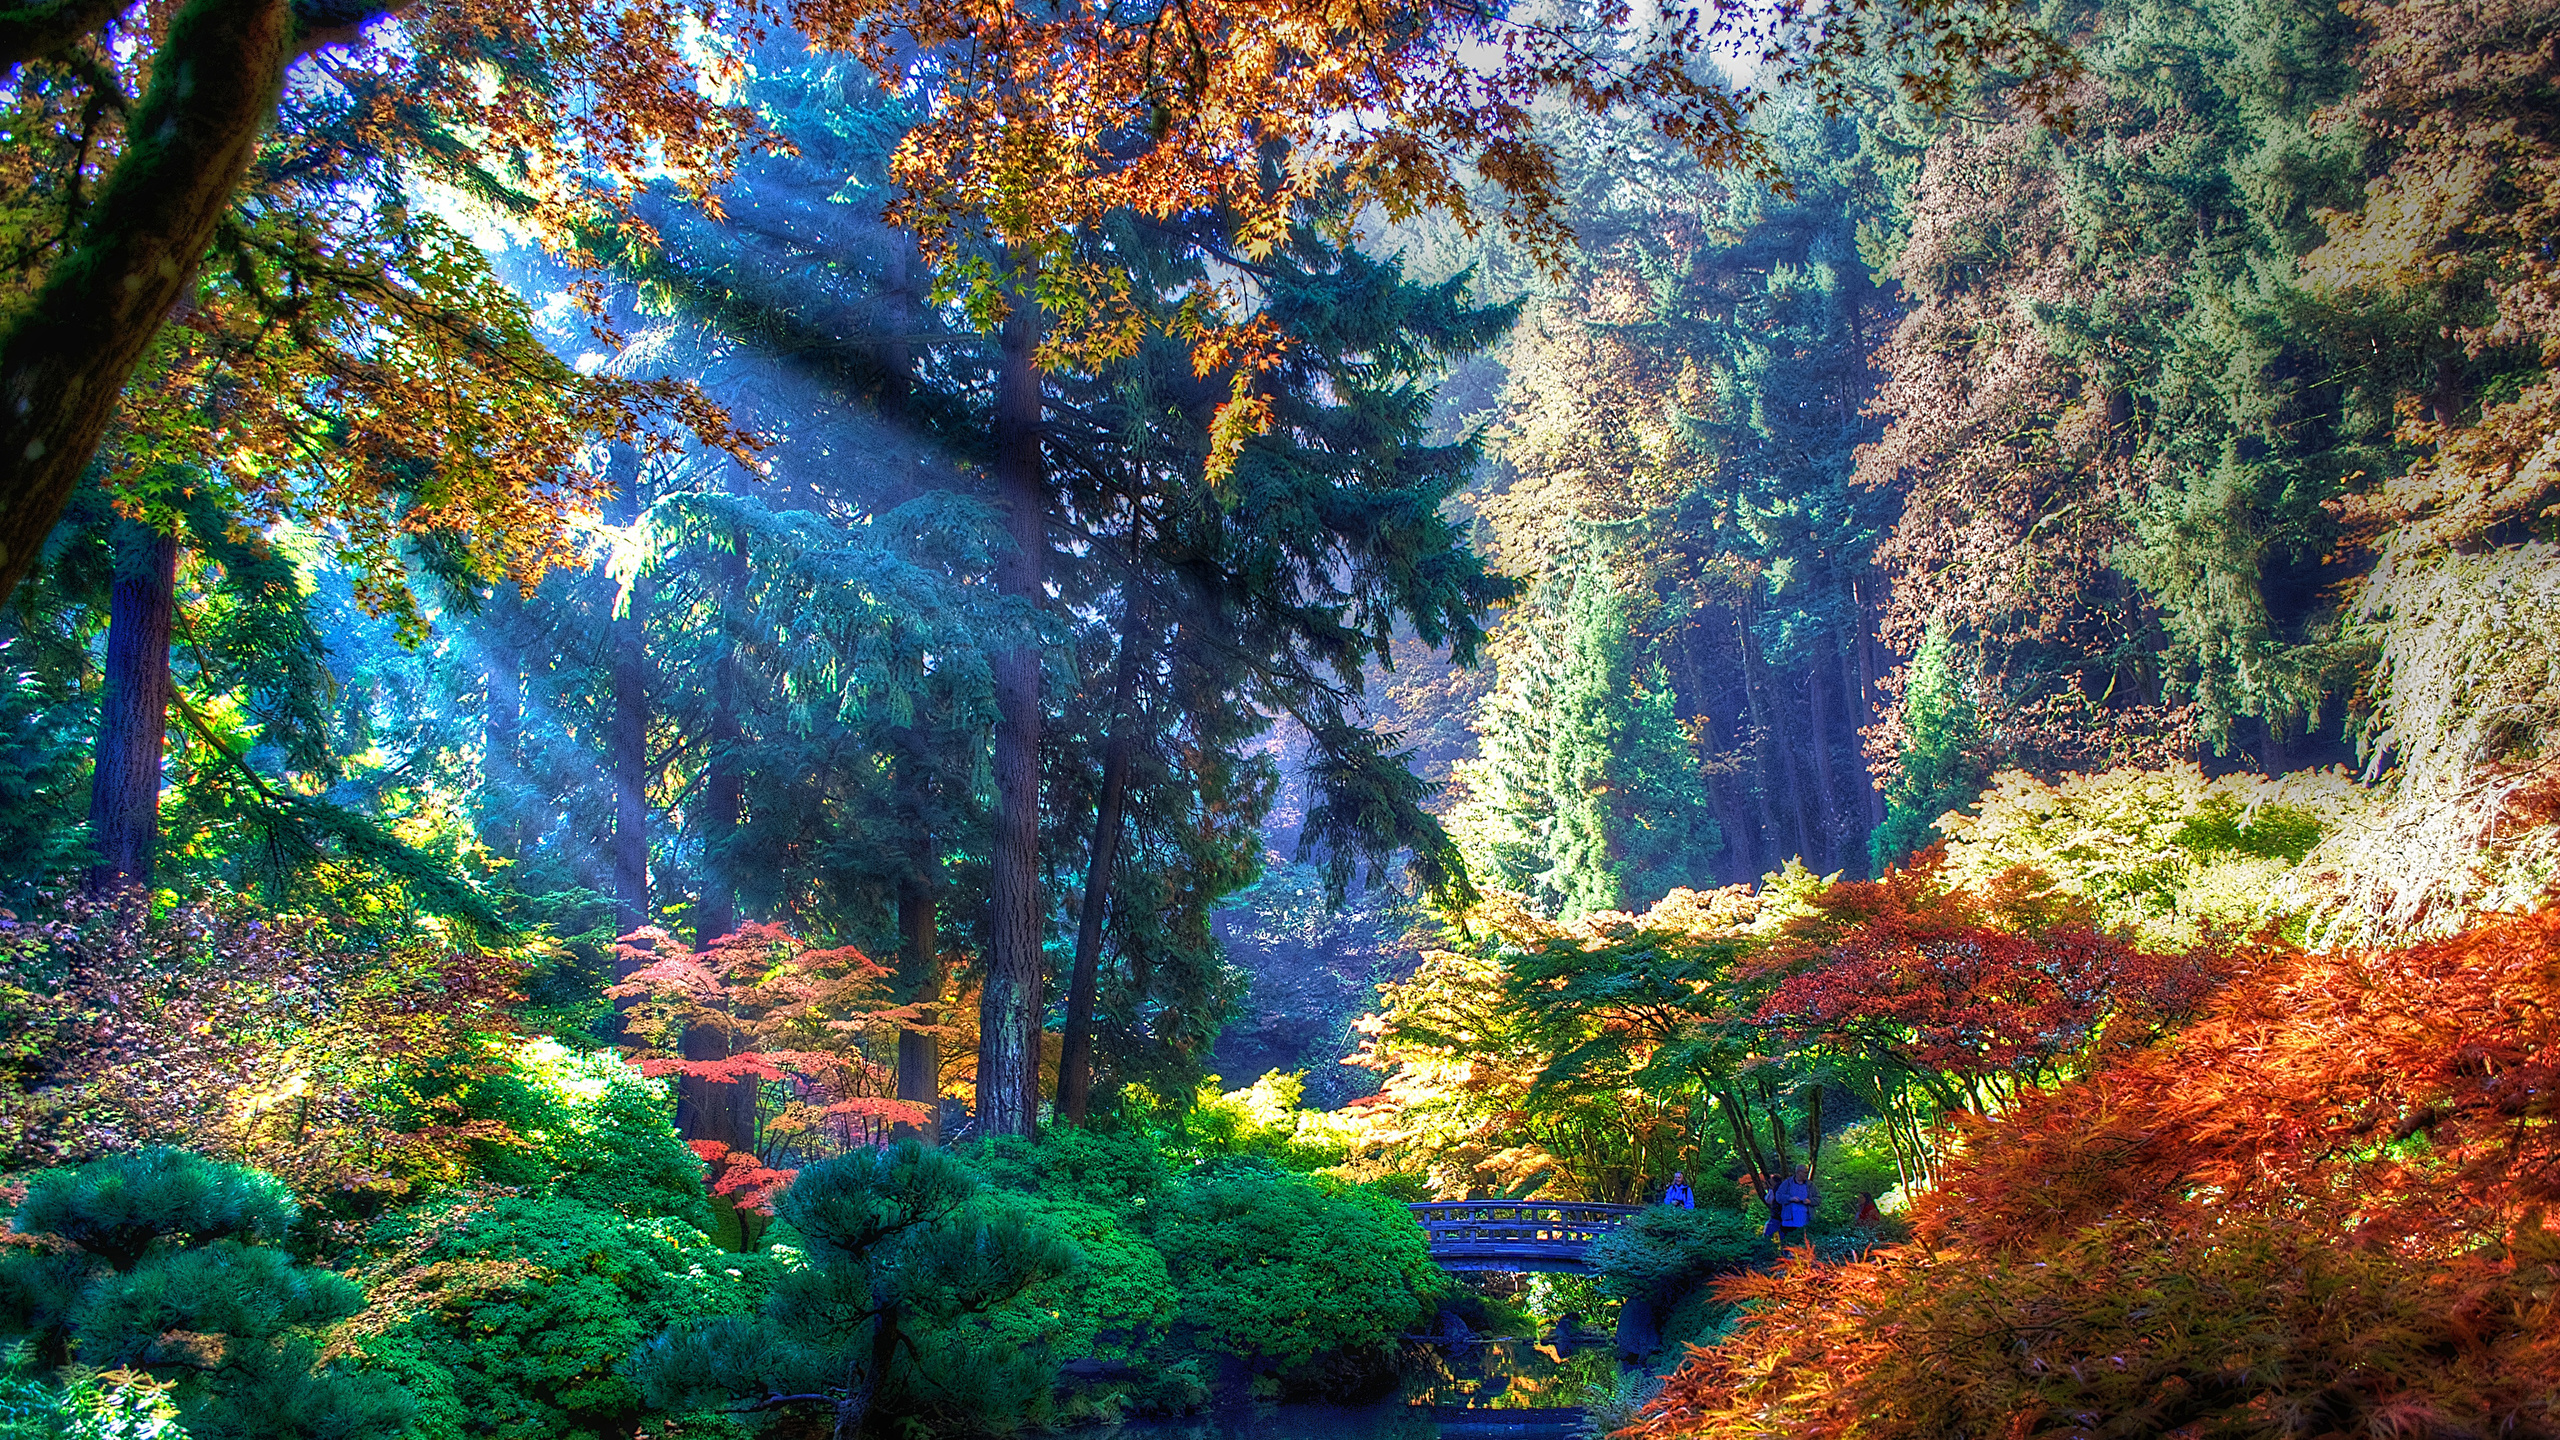 壁紙 2560x1440 アメリカ合衆国 公園 秋 Portland Oregon 低木 木 自然 ダウンロード 写真